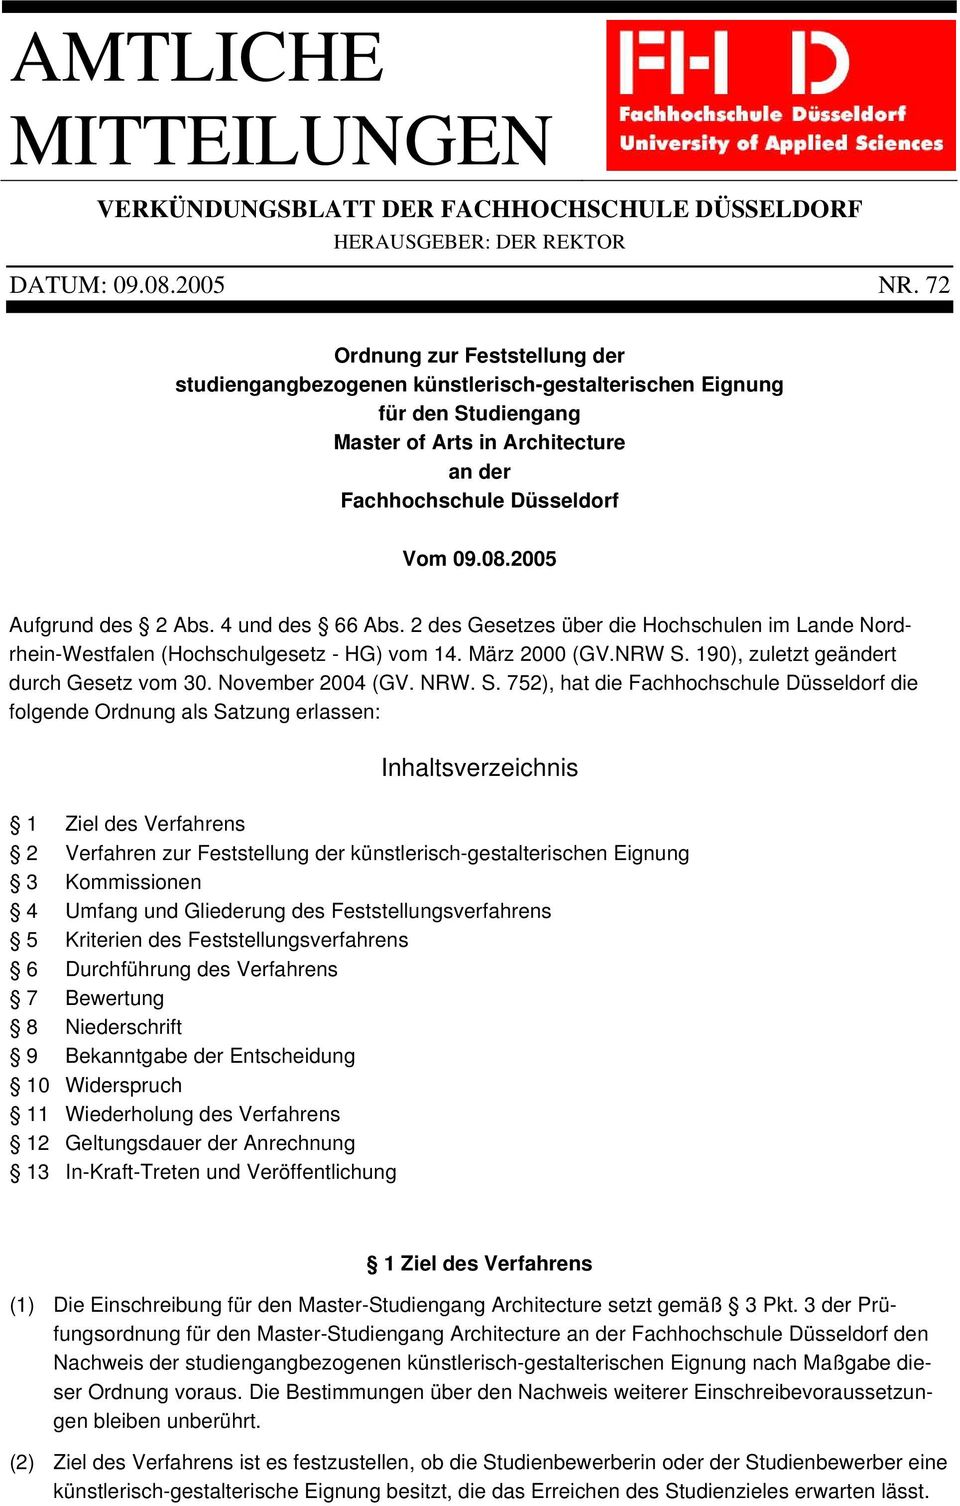 2005 Aufgrund des 2 Abs. 4 und des 66 Abs. 2 des Gesetzes über die Hochschulen im Lande Nordrhein-Westfalen (Hochschulgesetz - HG) vom 14. März 2000 (GV.NRW S.